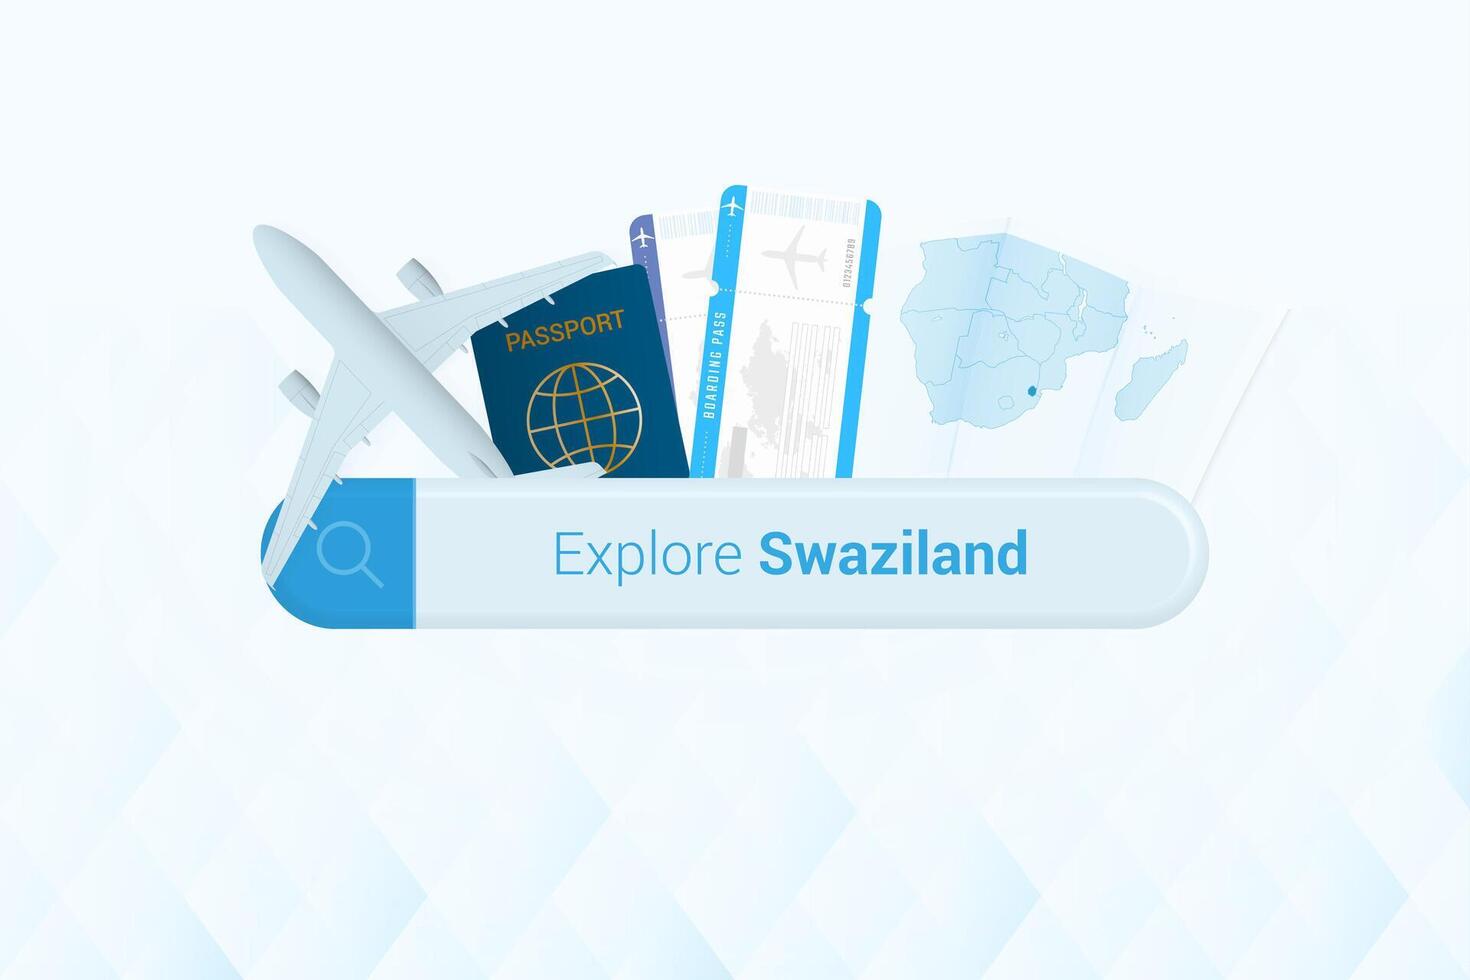 suchen Tickets zu Swasiland oder Reise Ziel im Swasiland. suchen Bar mit Flugzeug, Reisepass, Einsteigen passieren, Tickets und Karte. vektor